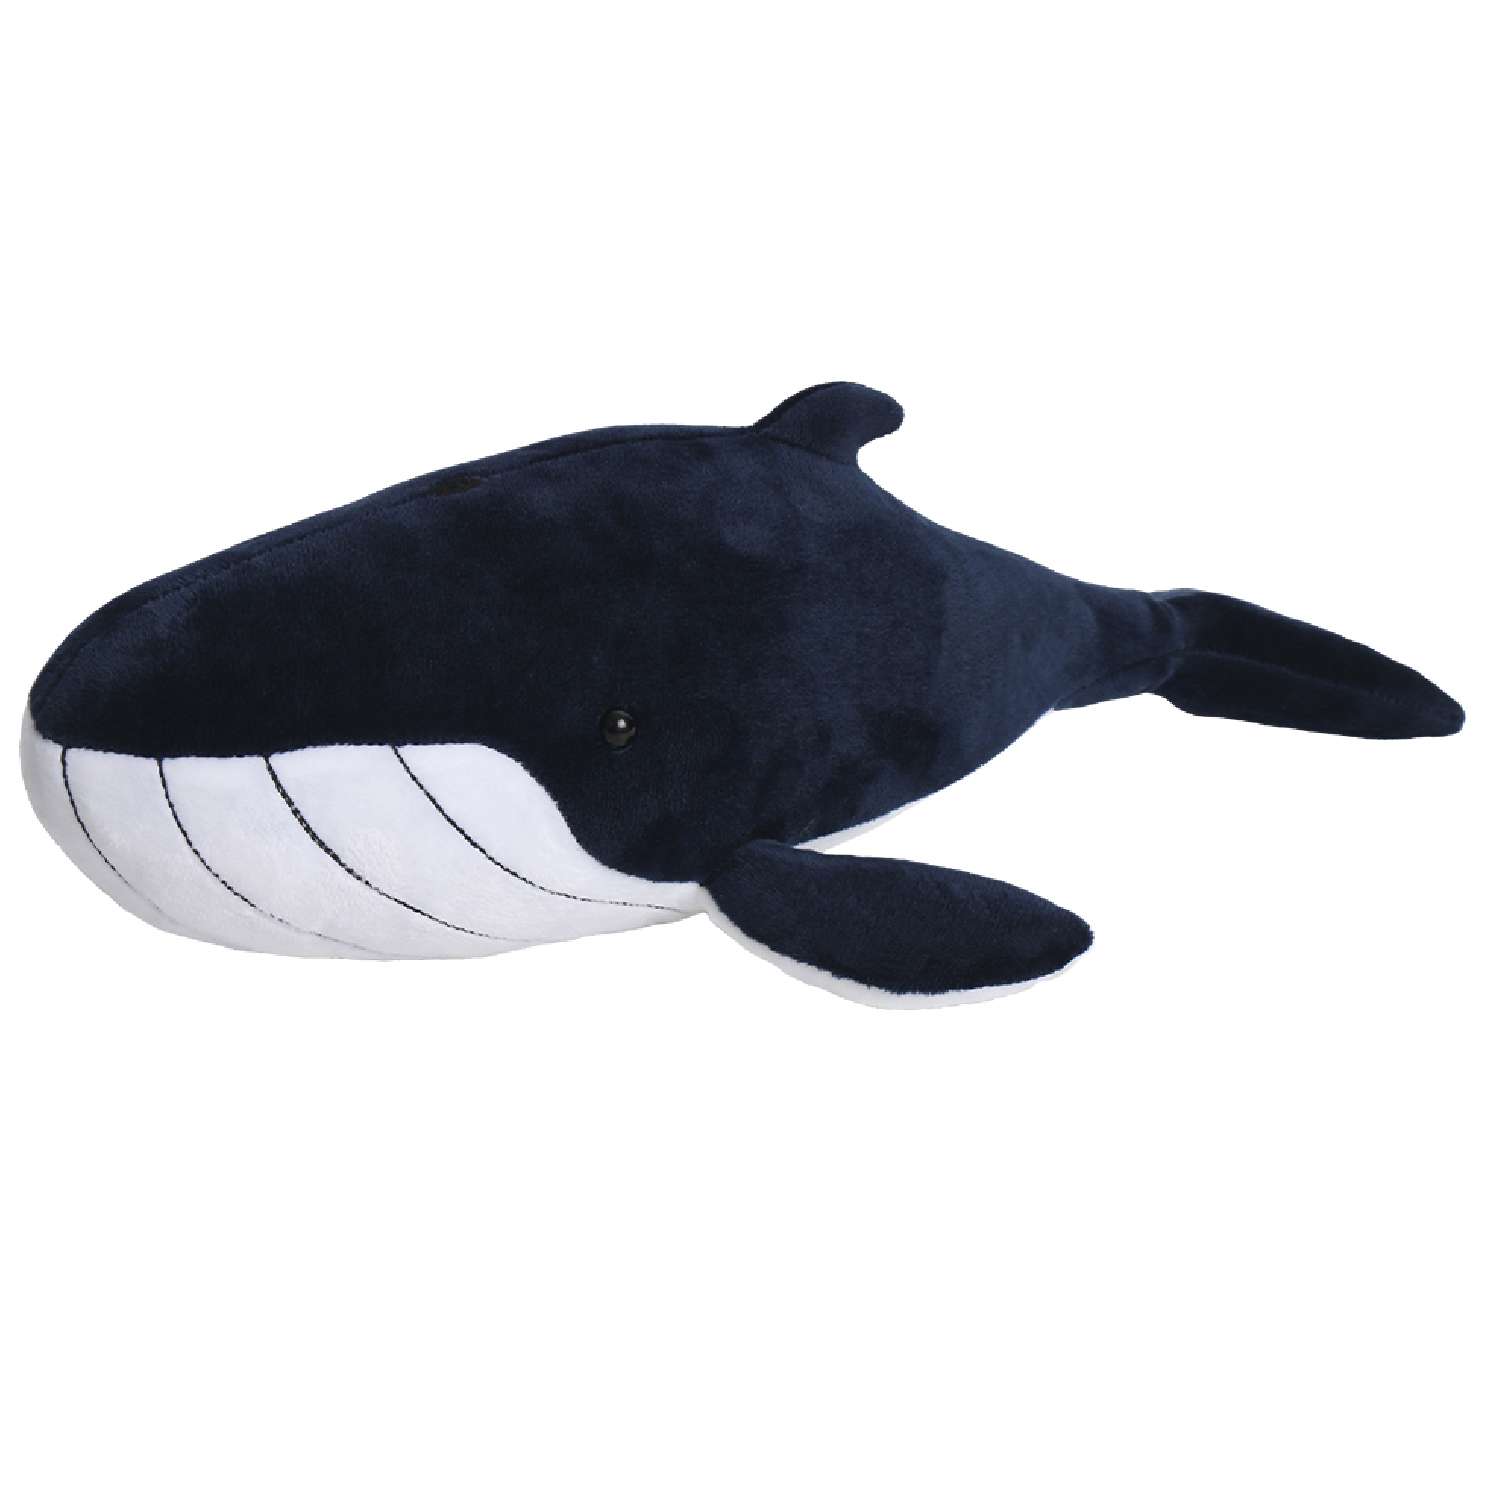 Мягкая игрушка All About Nature Голубой кит 42см серия Морские обитатели - фото 1